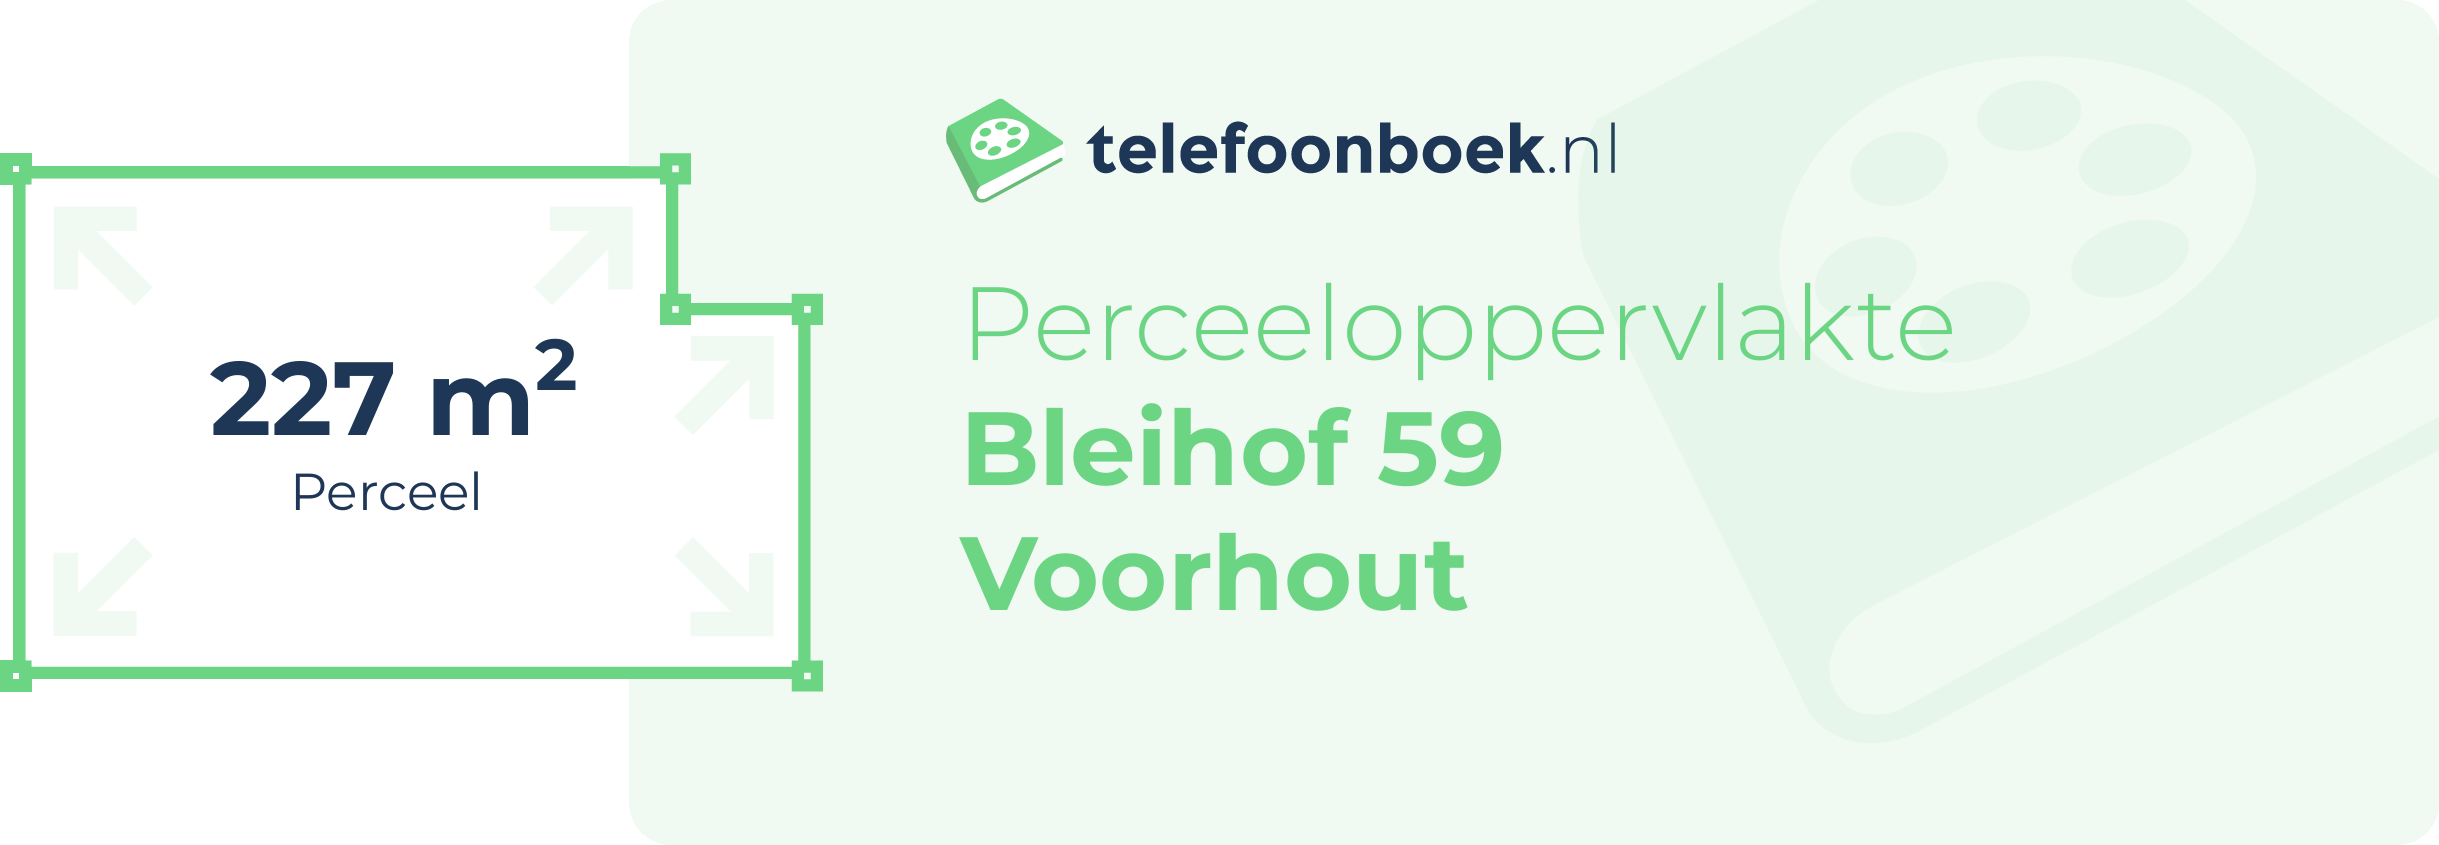 Perceeloppervlakte Bleihof 59 Voorhout